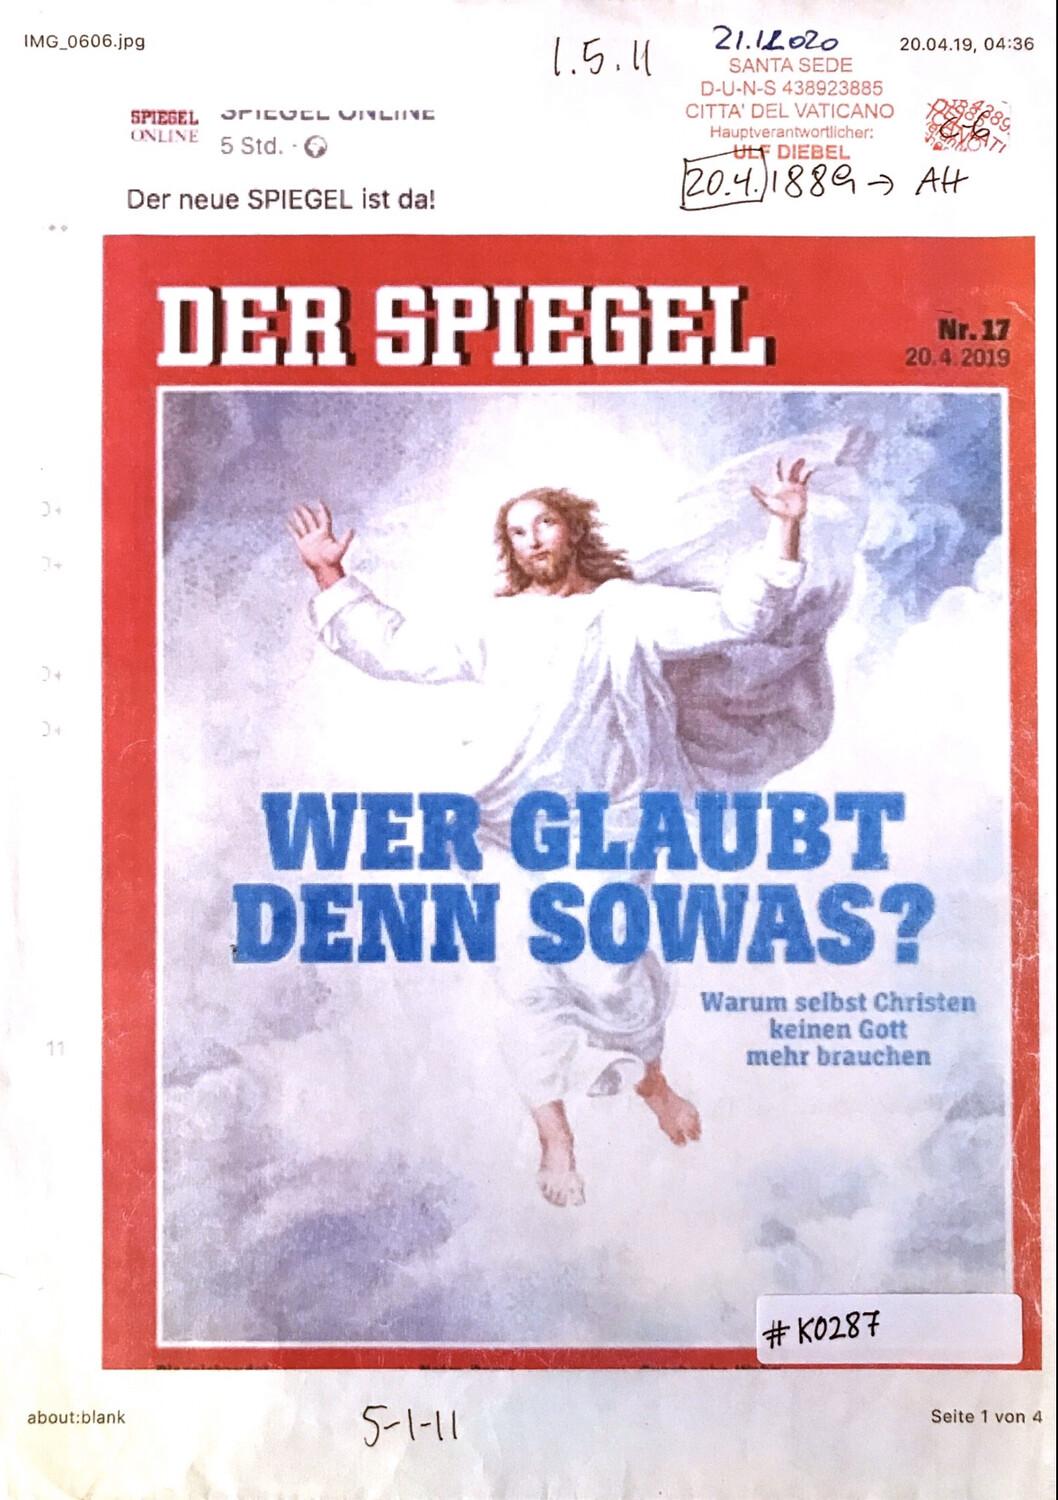 #K0287 l Der Spiegel, Nr.17 - Wer glaubt denn sowas? Warum selbst Christen keinen Gott mehr brauchen